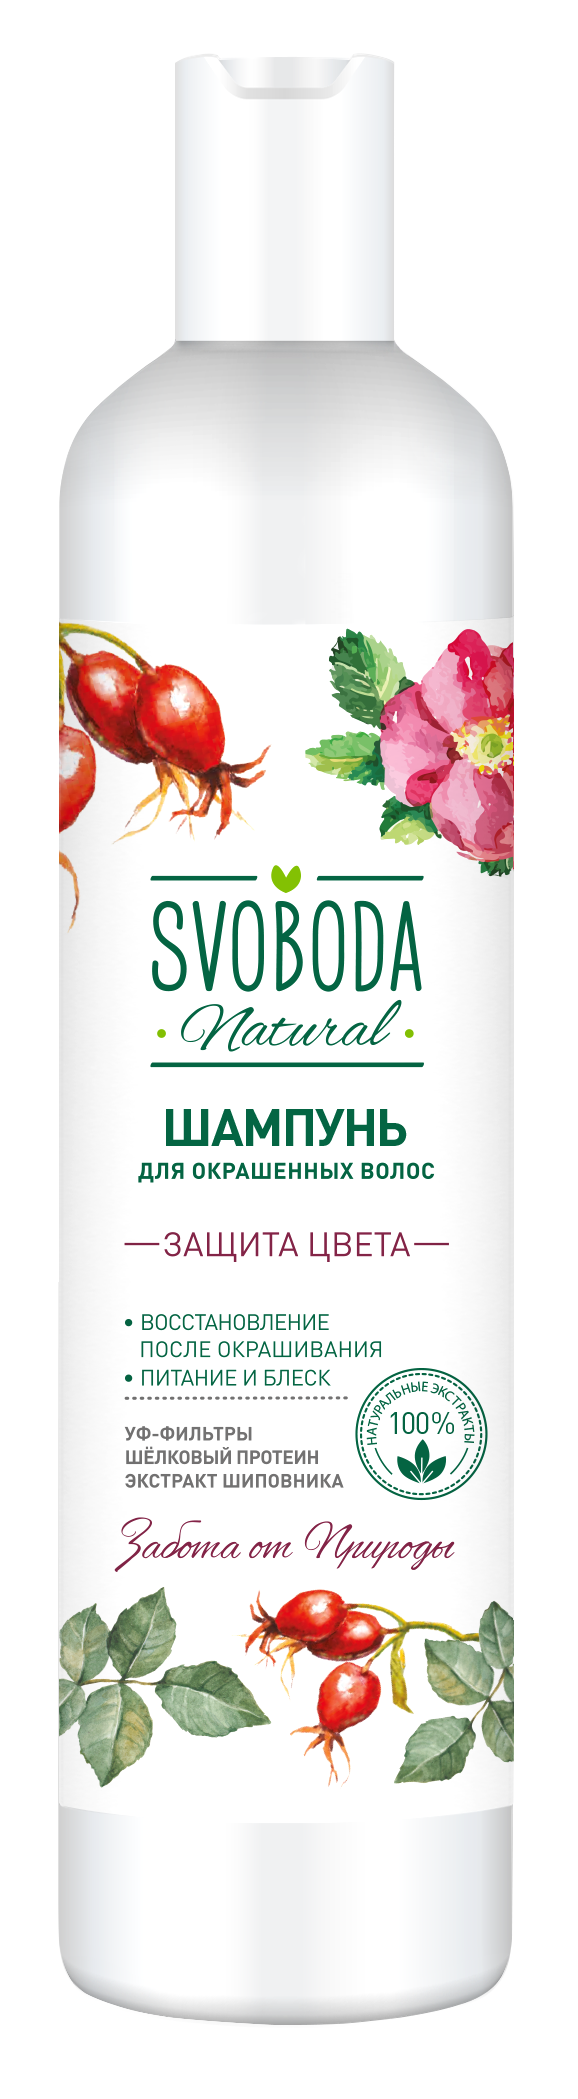 Купить Шампунь Svoboda Natural Защита цвета для окрашенных волос 430 мл, Свобода